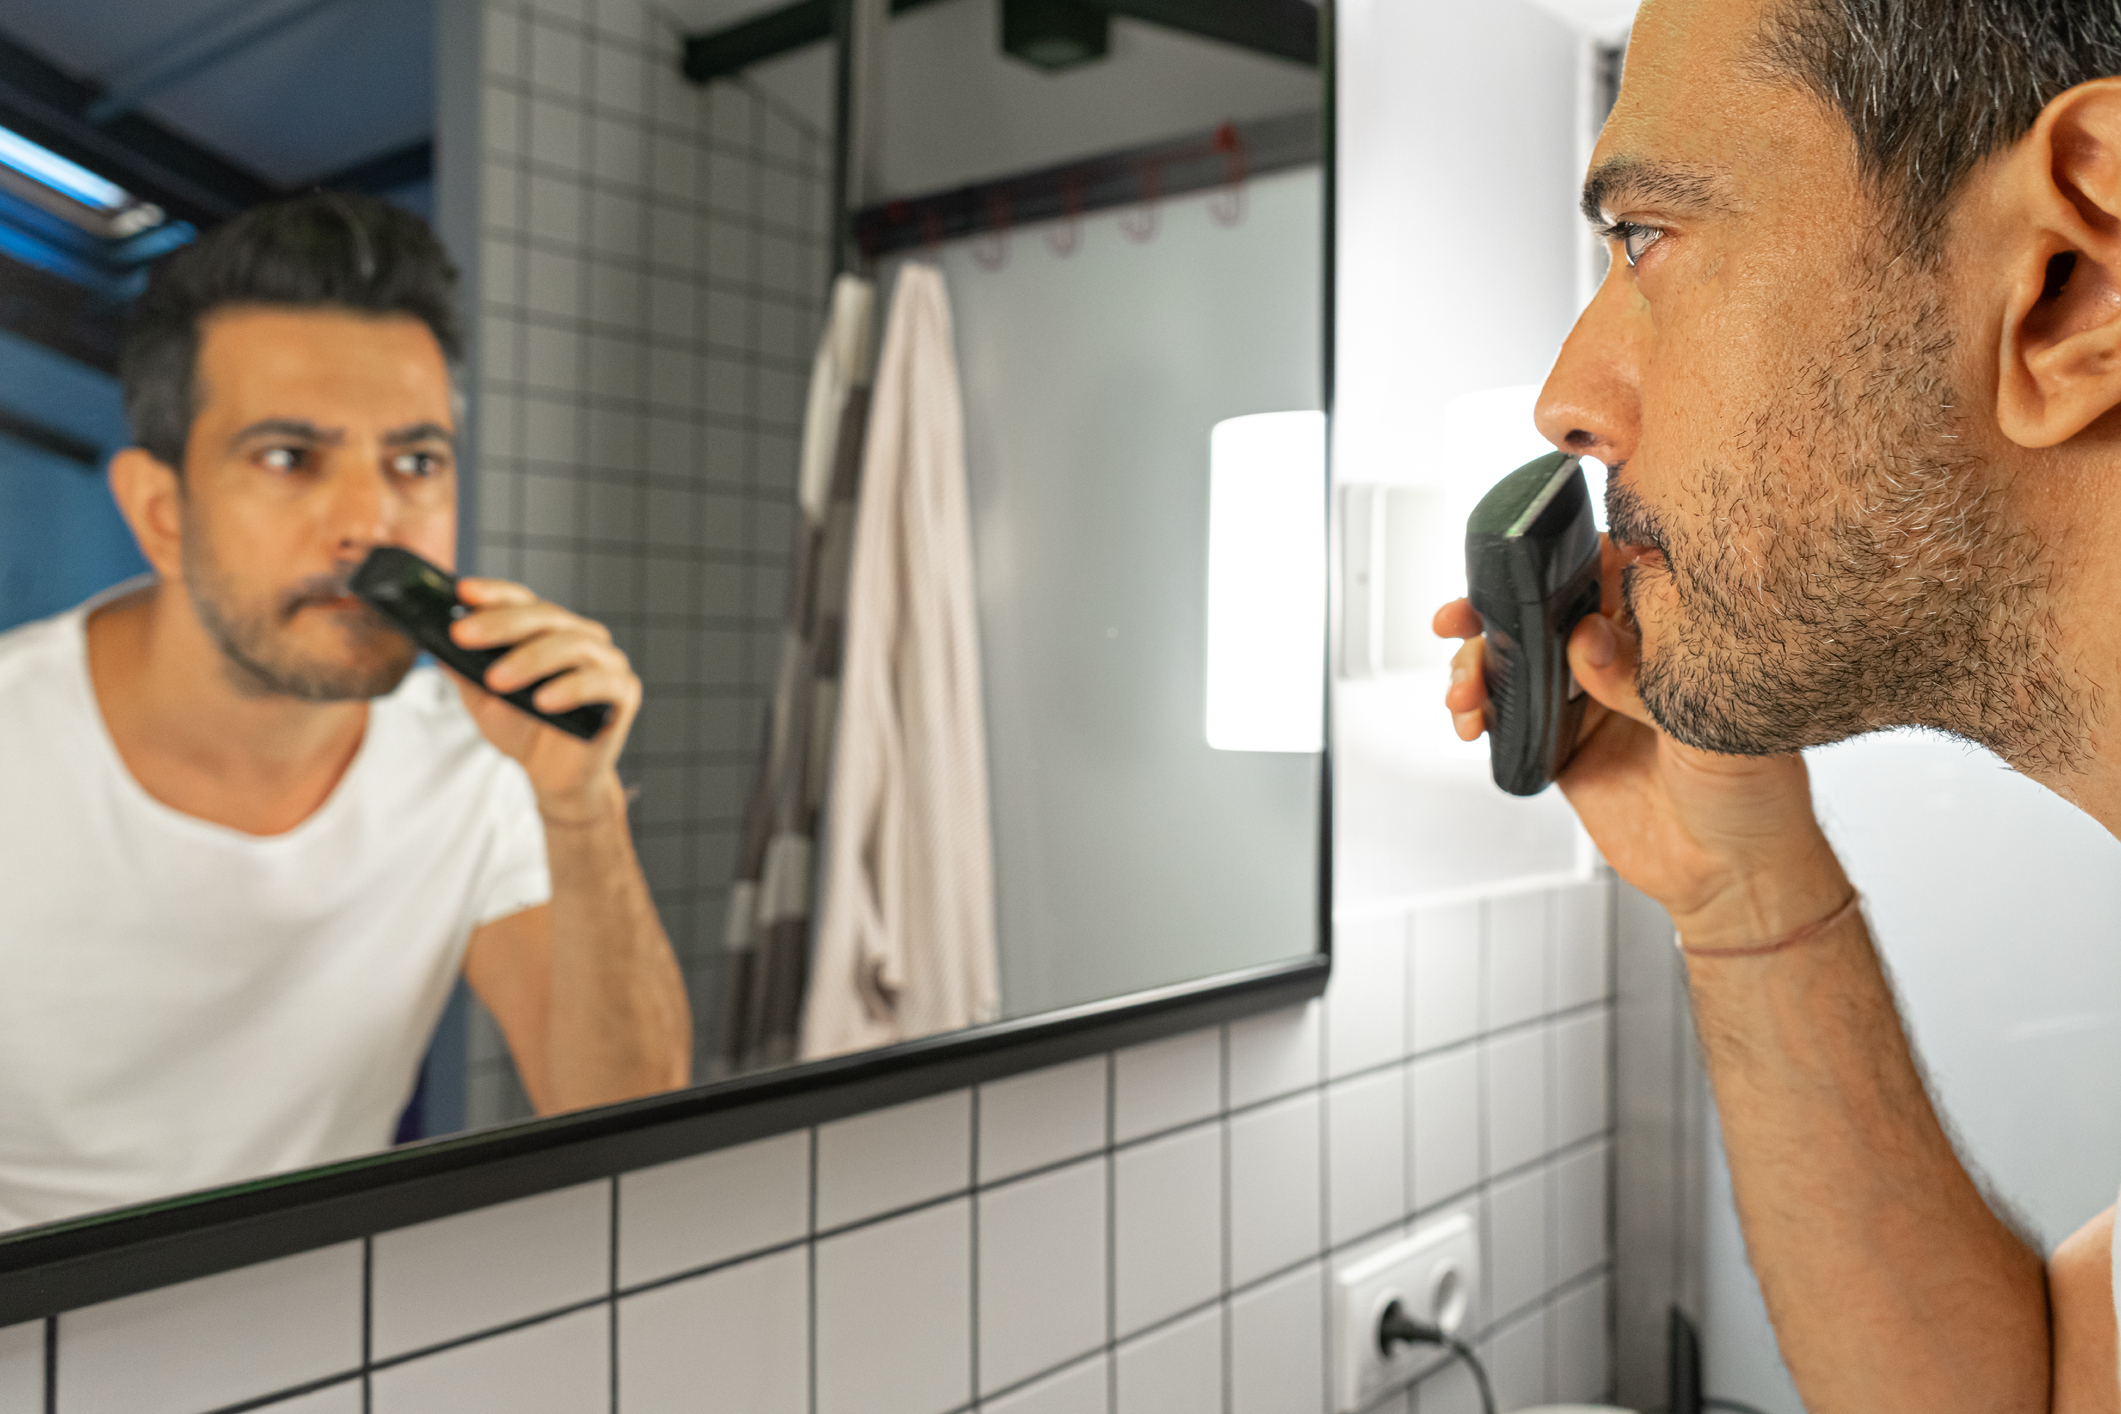 Muž si před zrcadlem zastřihuje vousy